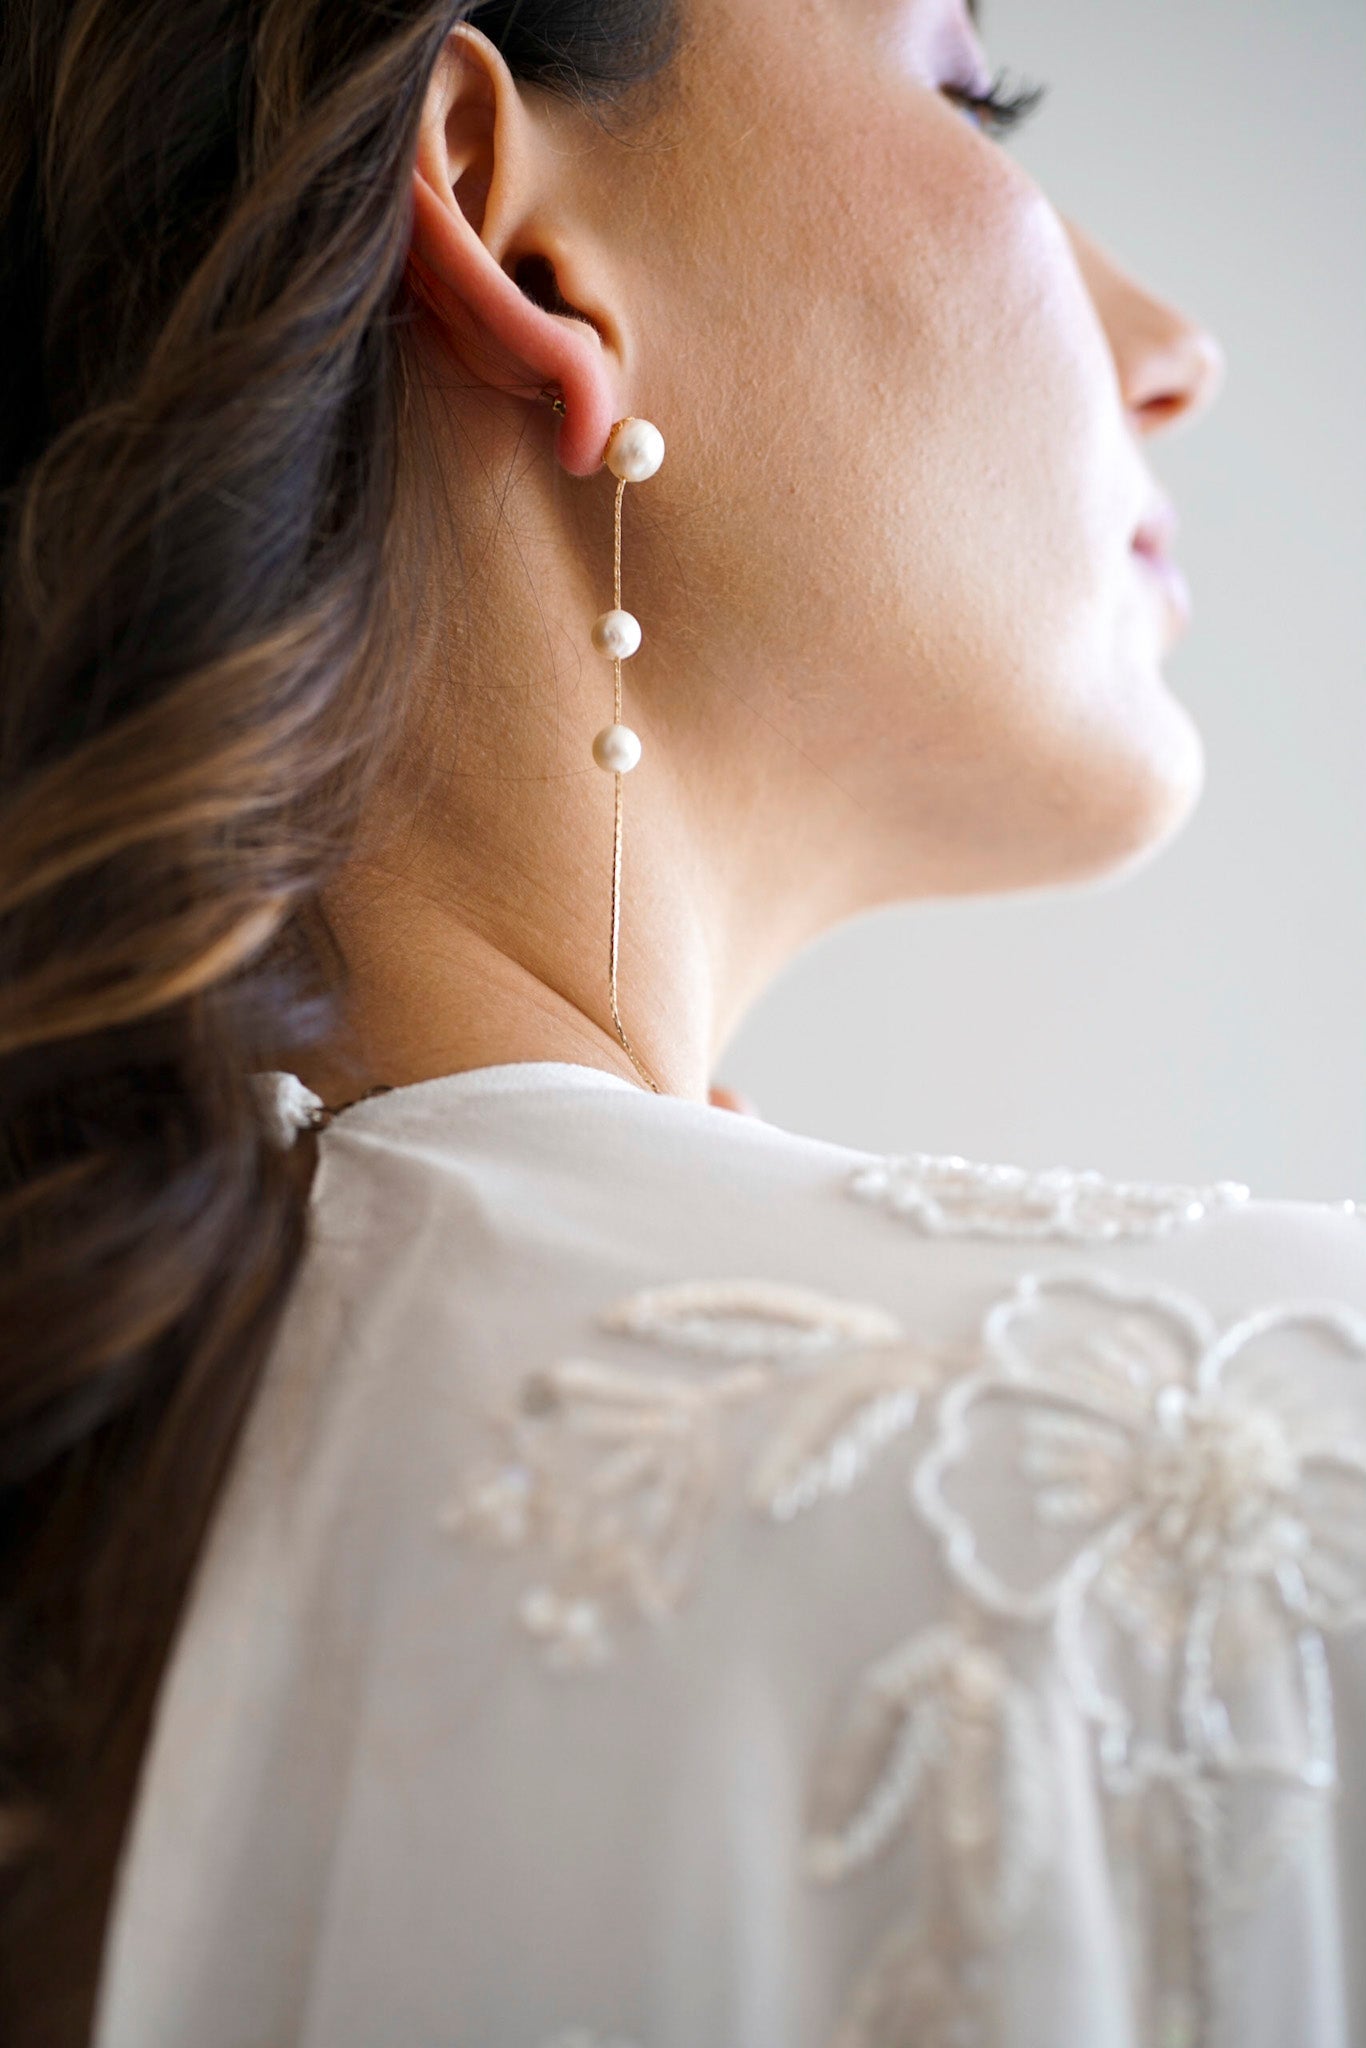 Mariée portant des boucles d'oreilles pendantes faite de trois perles naturelles de culture accrochées à une chaine en or